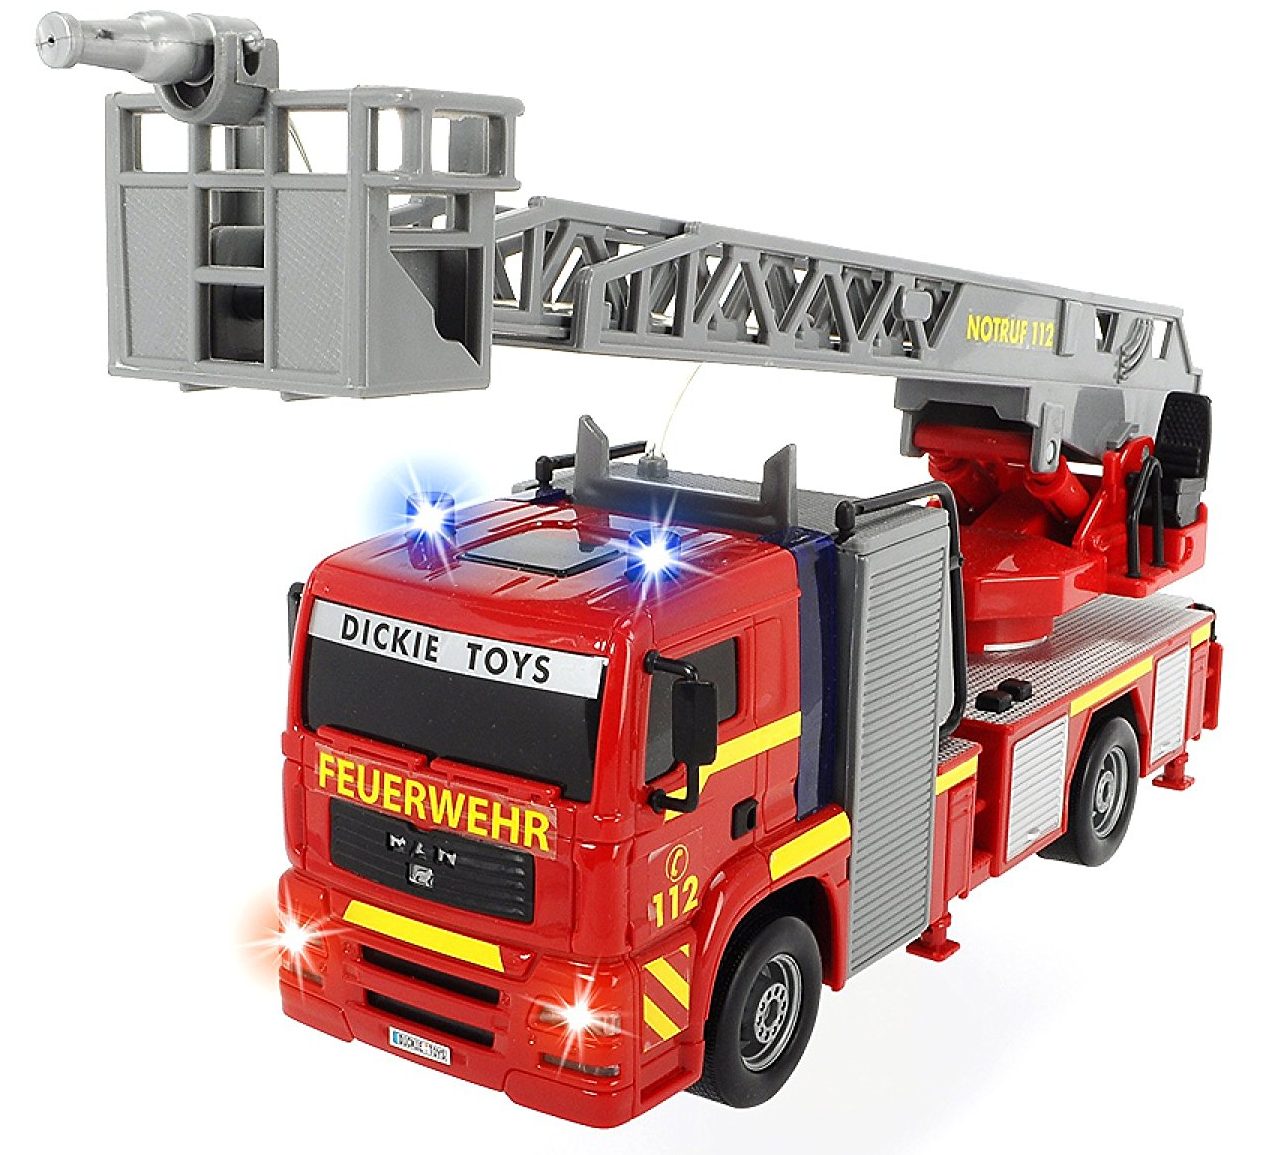 BIG Power Worker Mini Feuerwehr Feuerwehrauto Kinder Spielzeug Auto Spritzpumpe 